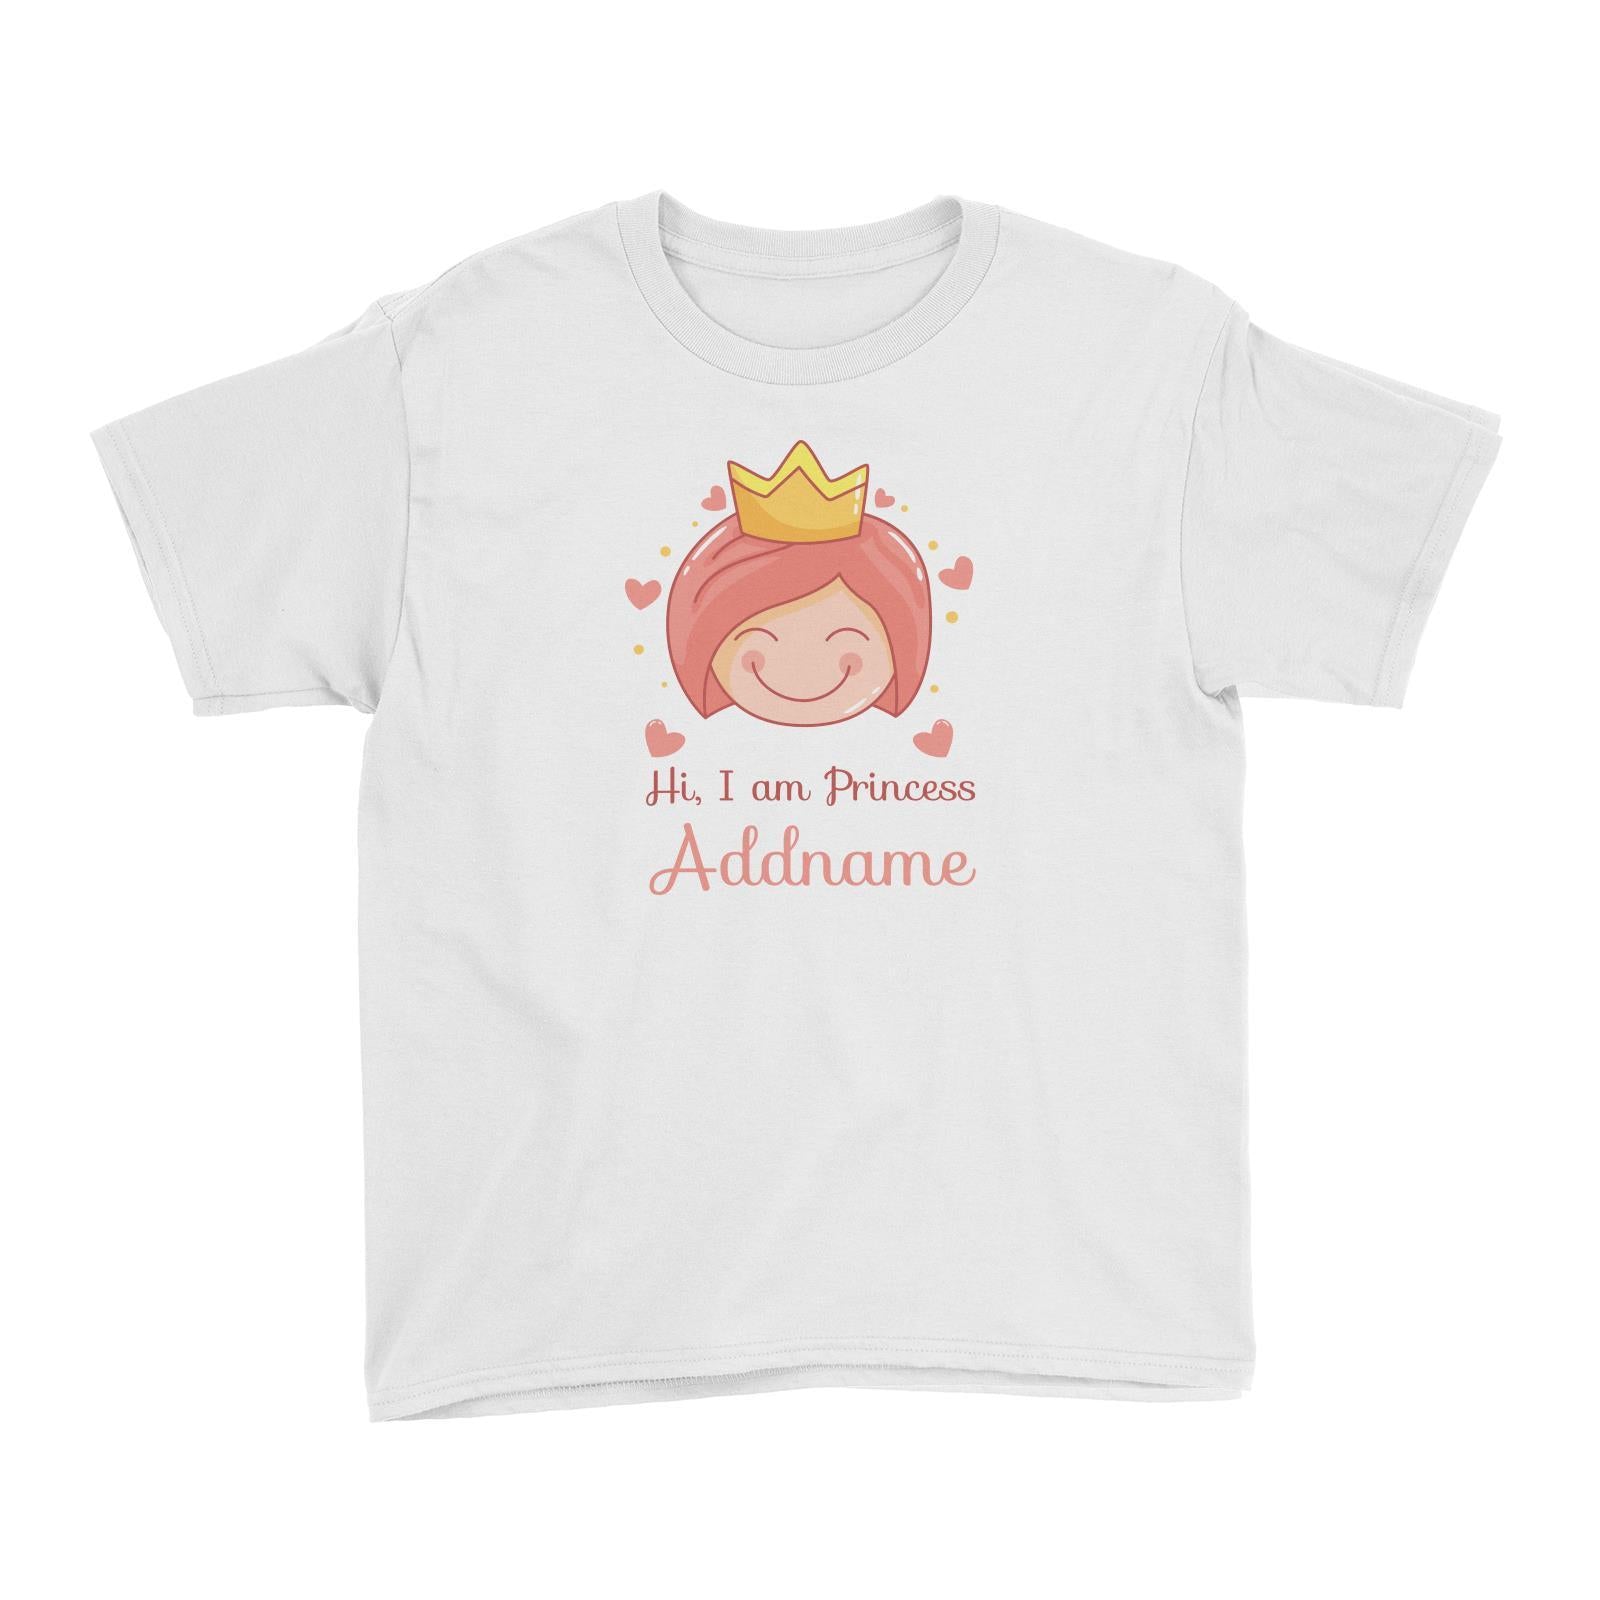 Cute Princess with Tiara Hi I Am Princess Addname Kid's T-Shirt